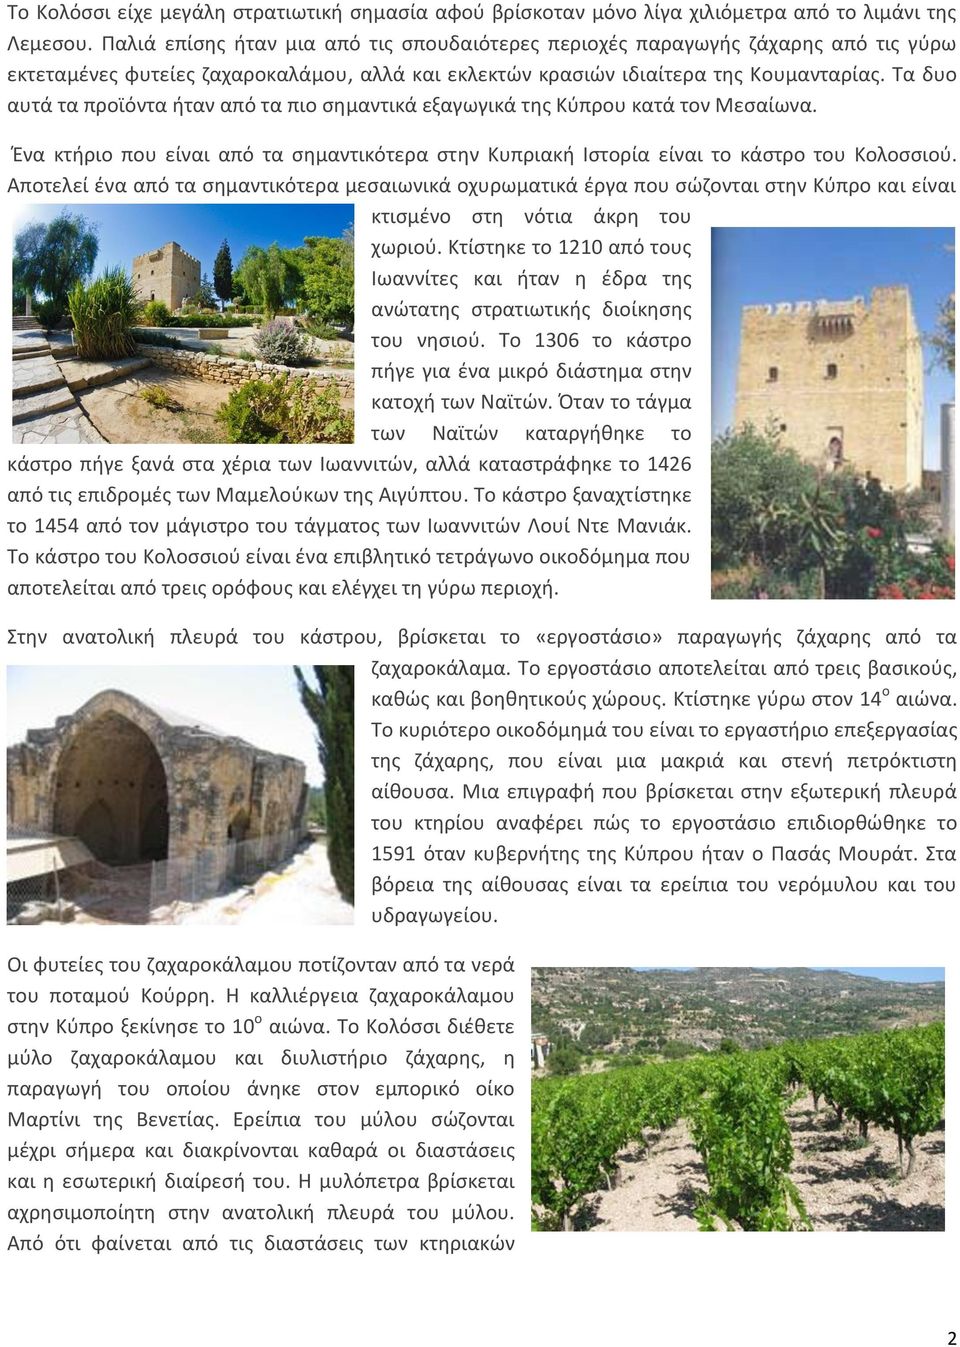 Τα δυο αυτά τα προϊόντα ήταν από τα πιο σημαντικά εξαγωγικά της Κύπρου κατά τον Μεσαίωνα. Ένα κτήριο που είναι από τα σημαντικότερα στην Κυπριακή Ιστορία είναι το κάστρο του Κολοσσιού.